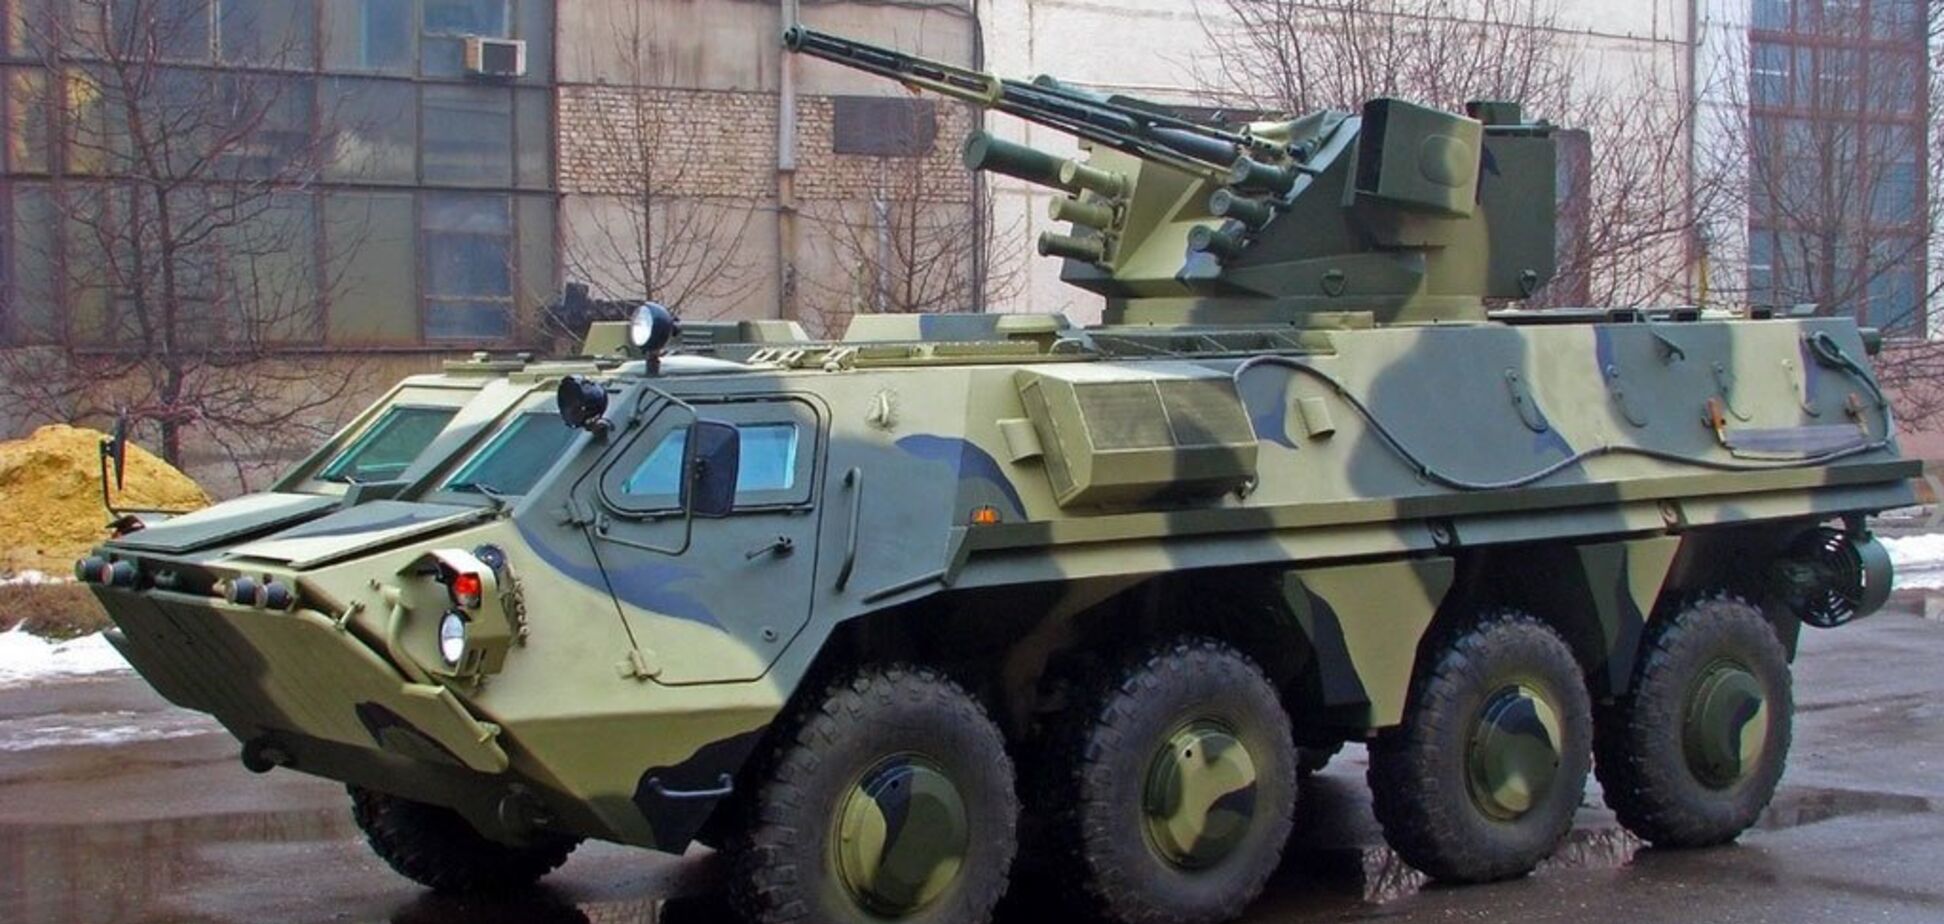 Супервооружение из спецстали: ВСУ передали новые БТР-4